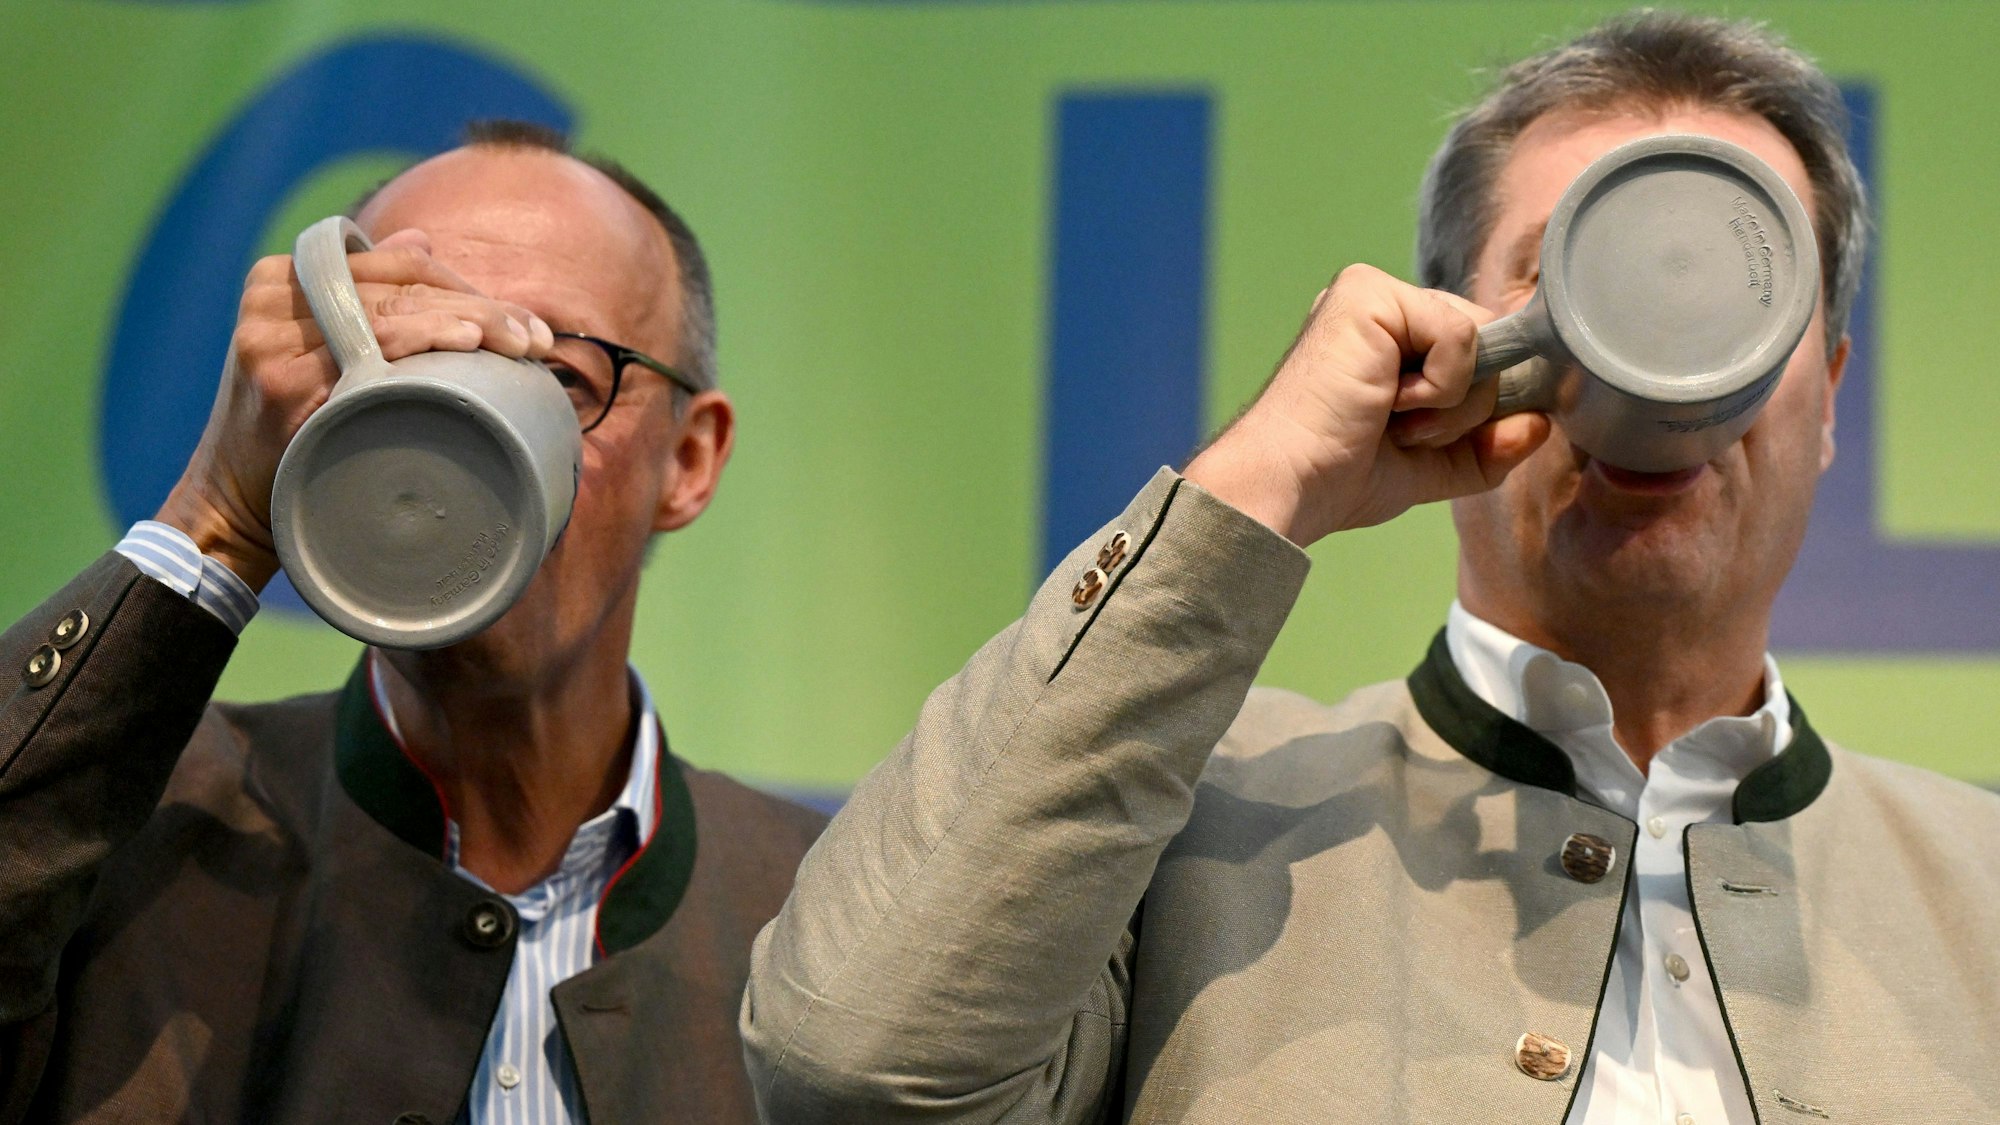 Bayern, Abensberg: Friedrich Merz (l), Bundesvorsitzender der CDU, und Markus Söder (CSU), Ministerpräsident von Bayern, trinken beim Politischen Frühschoppen Gillamoos auf der Bühne aus Bierkrügen.